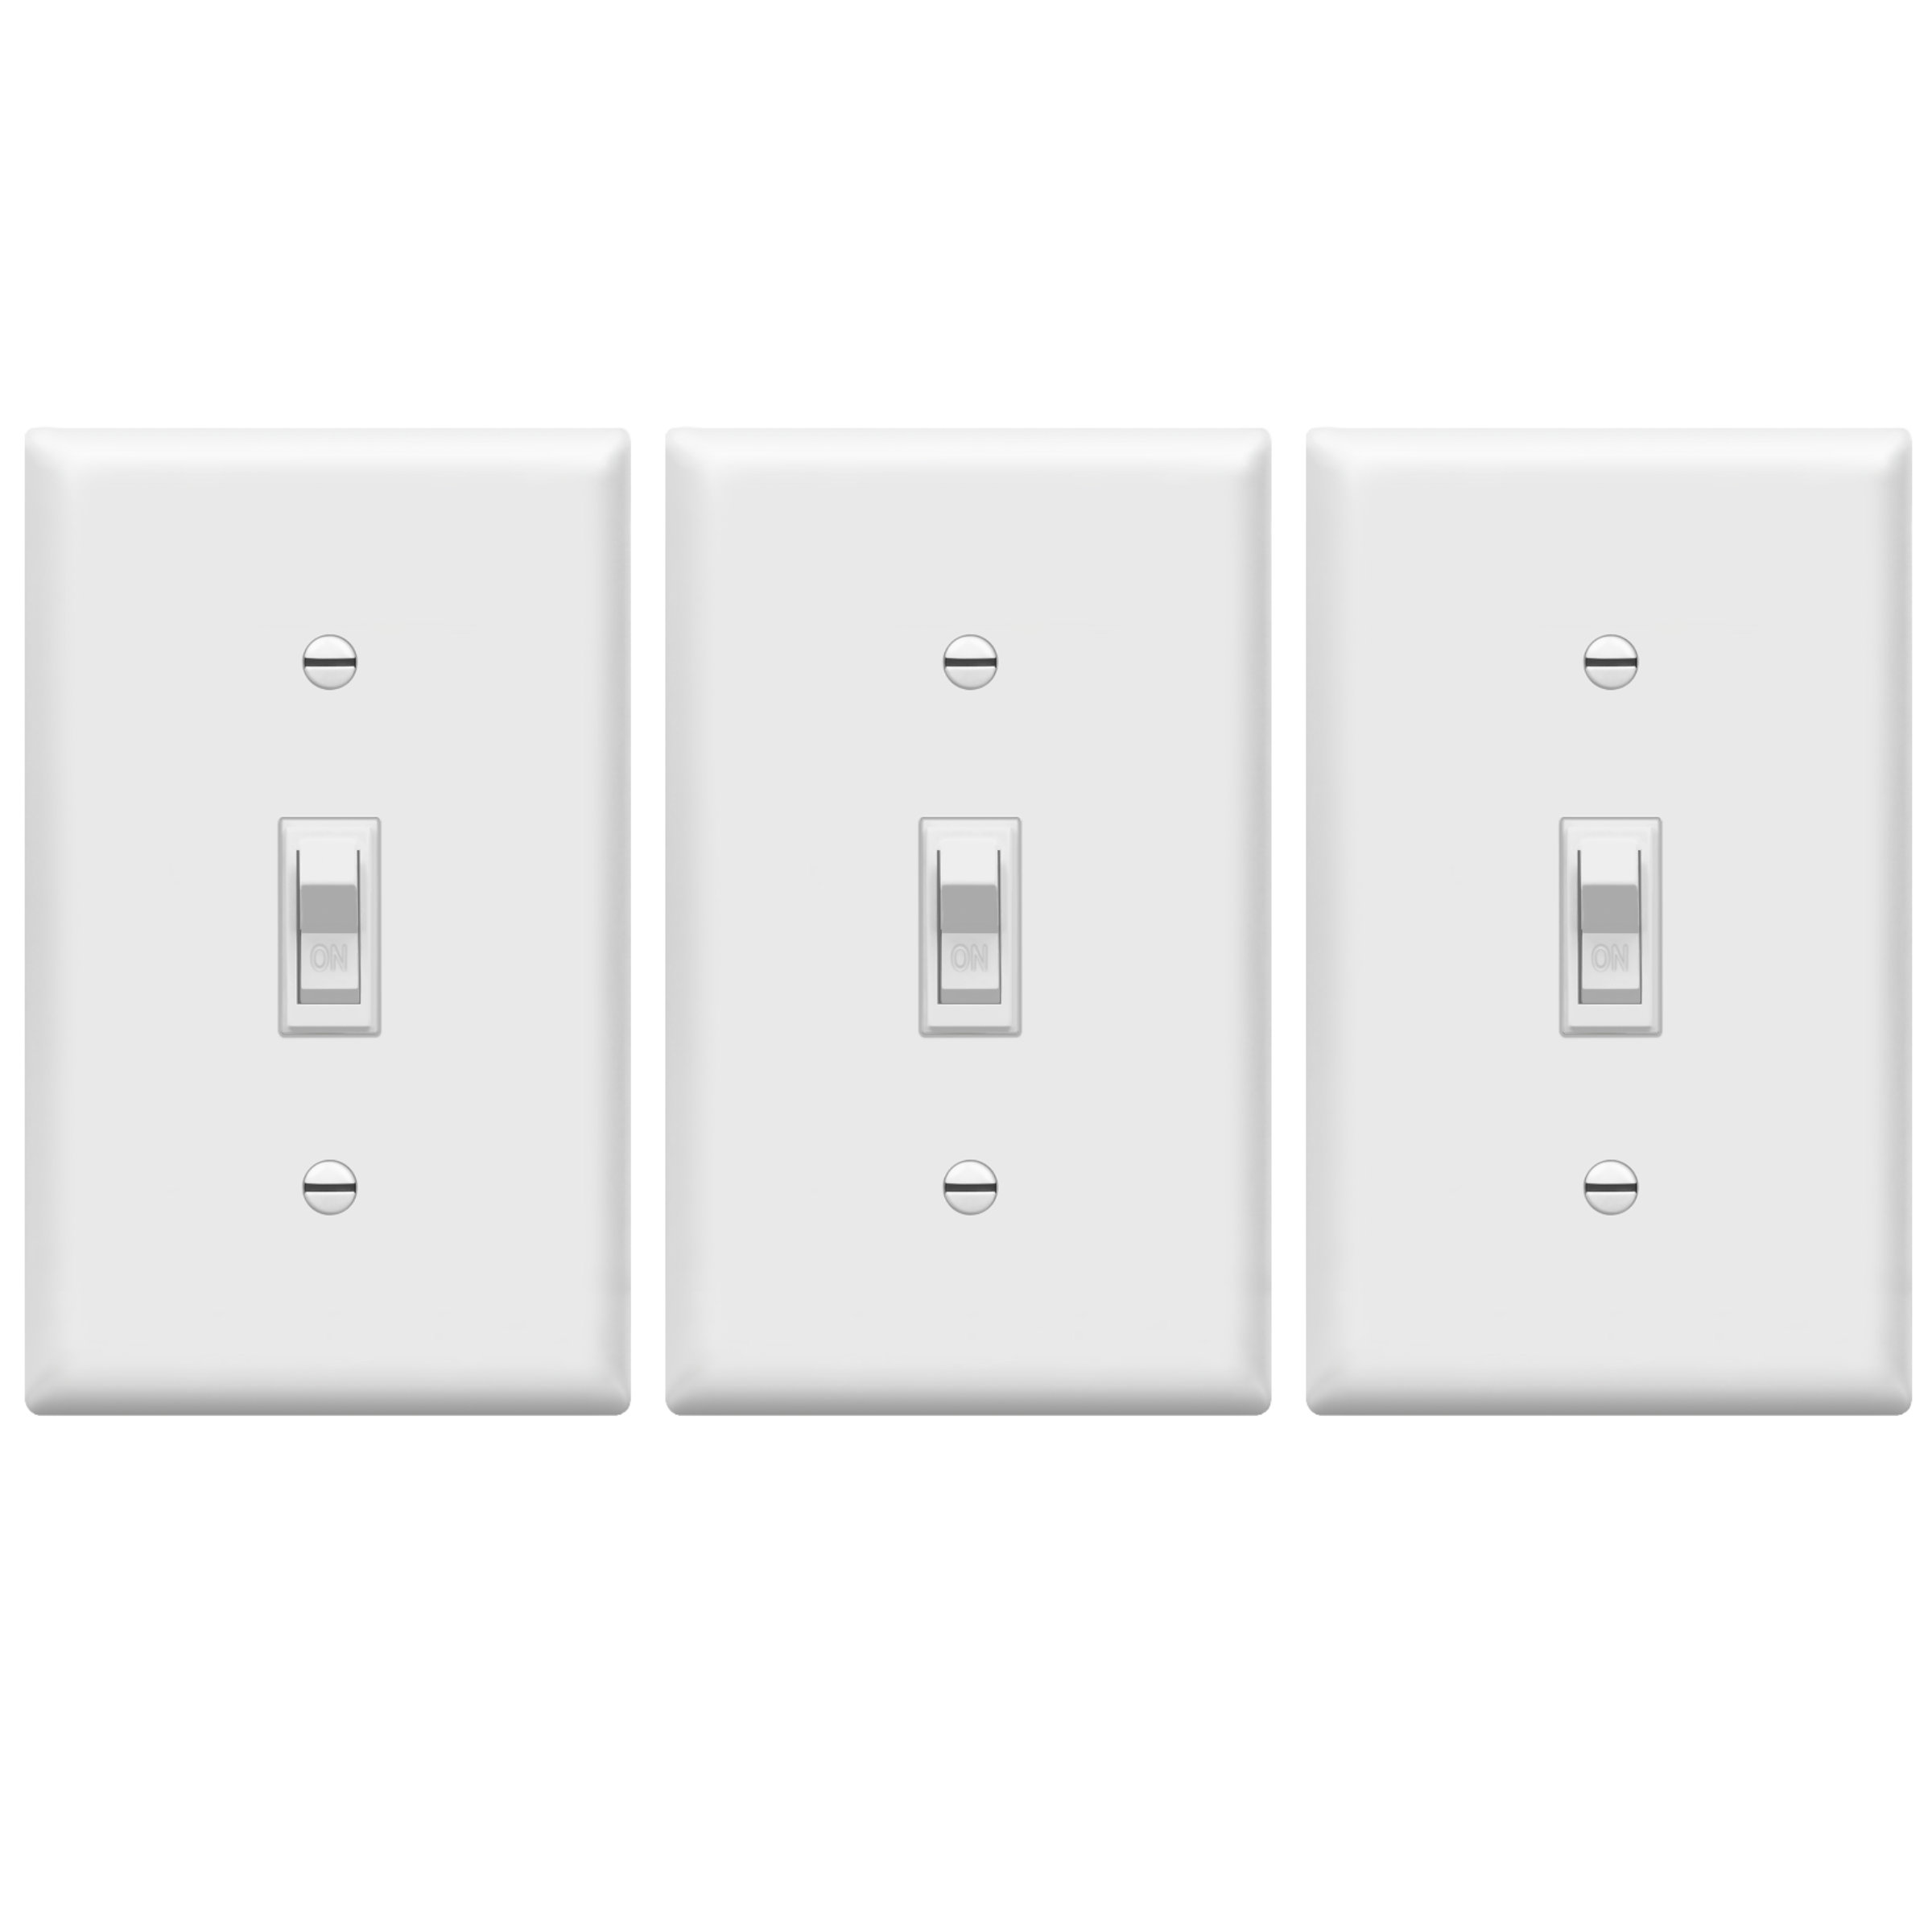 https://assets.wfcdn.com/im/23767253/compr-r85/2099/209920298/15-amps-tamper-resistant-single-pole-toggle-light-switch.jpg